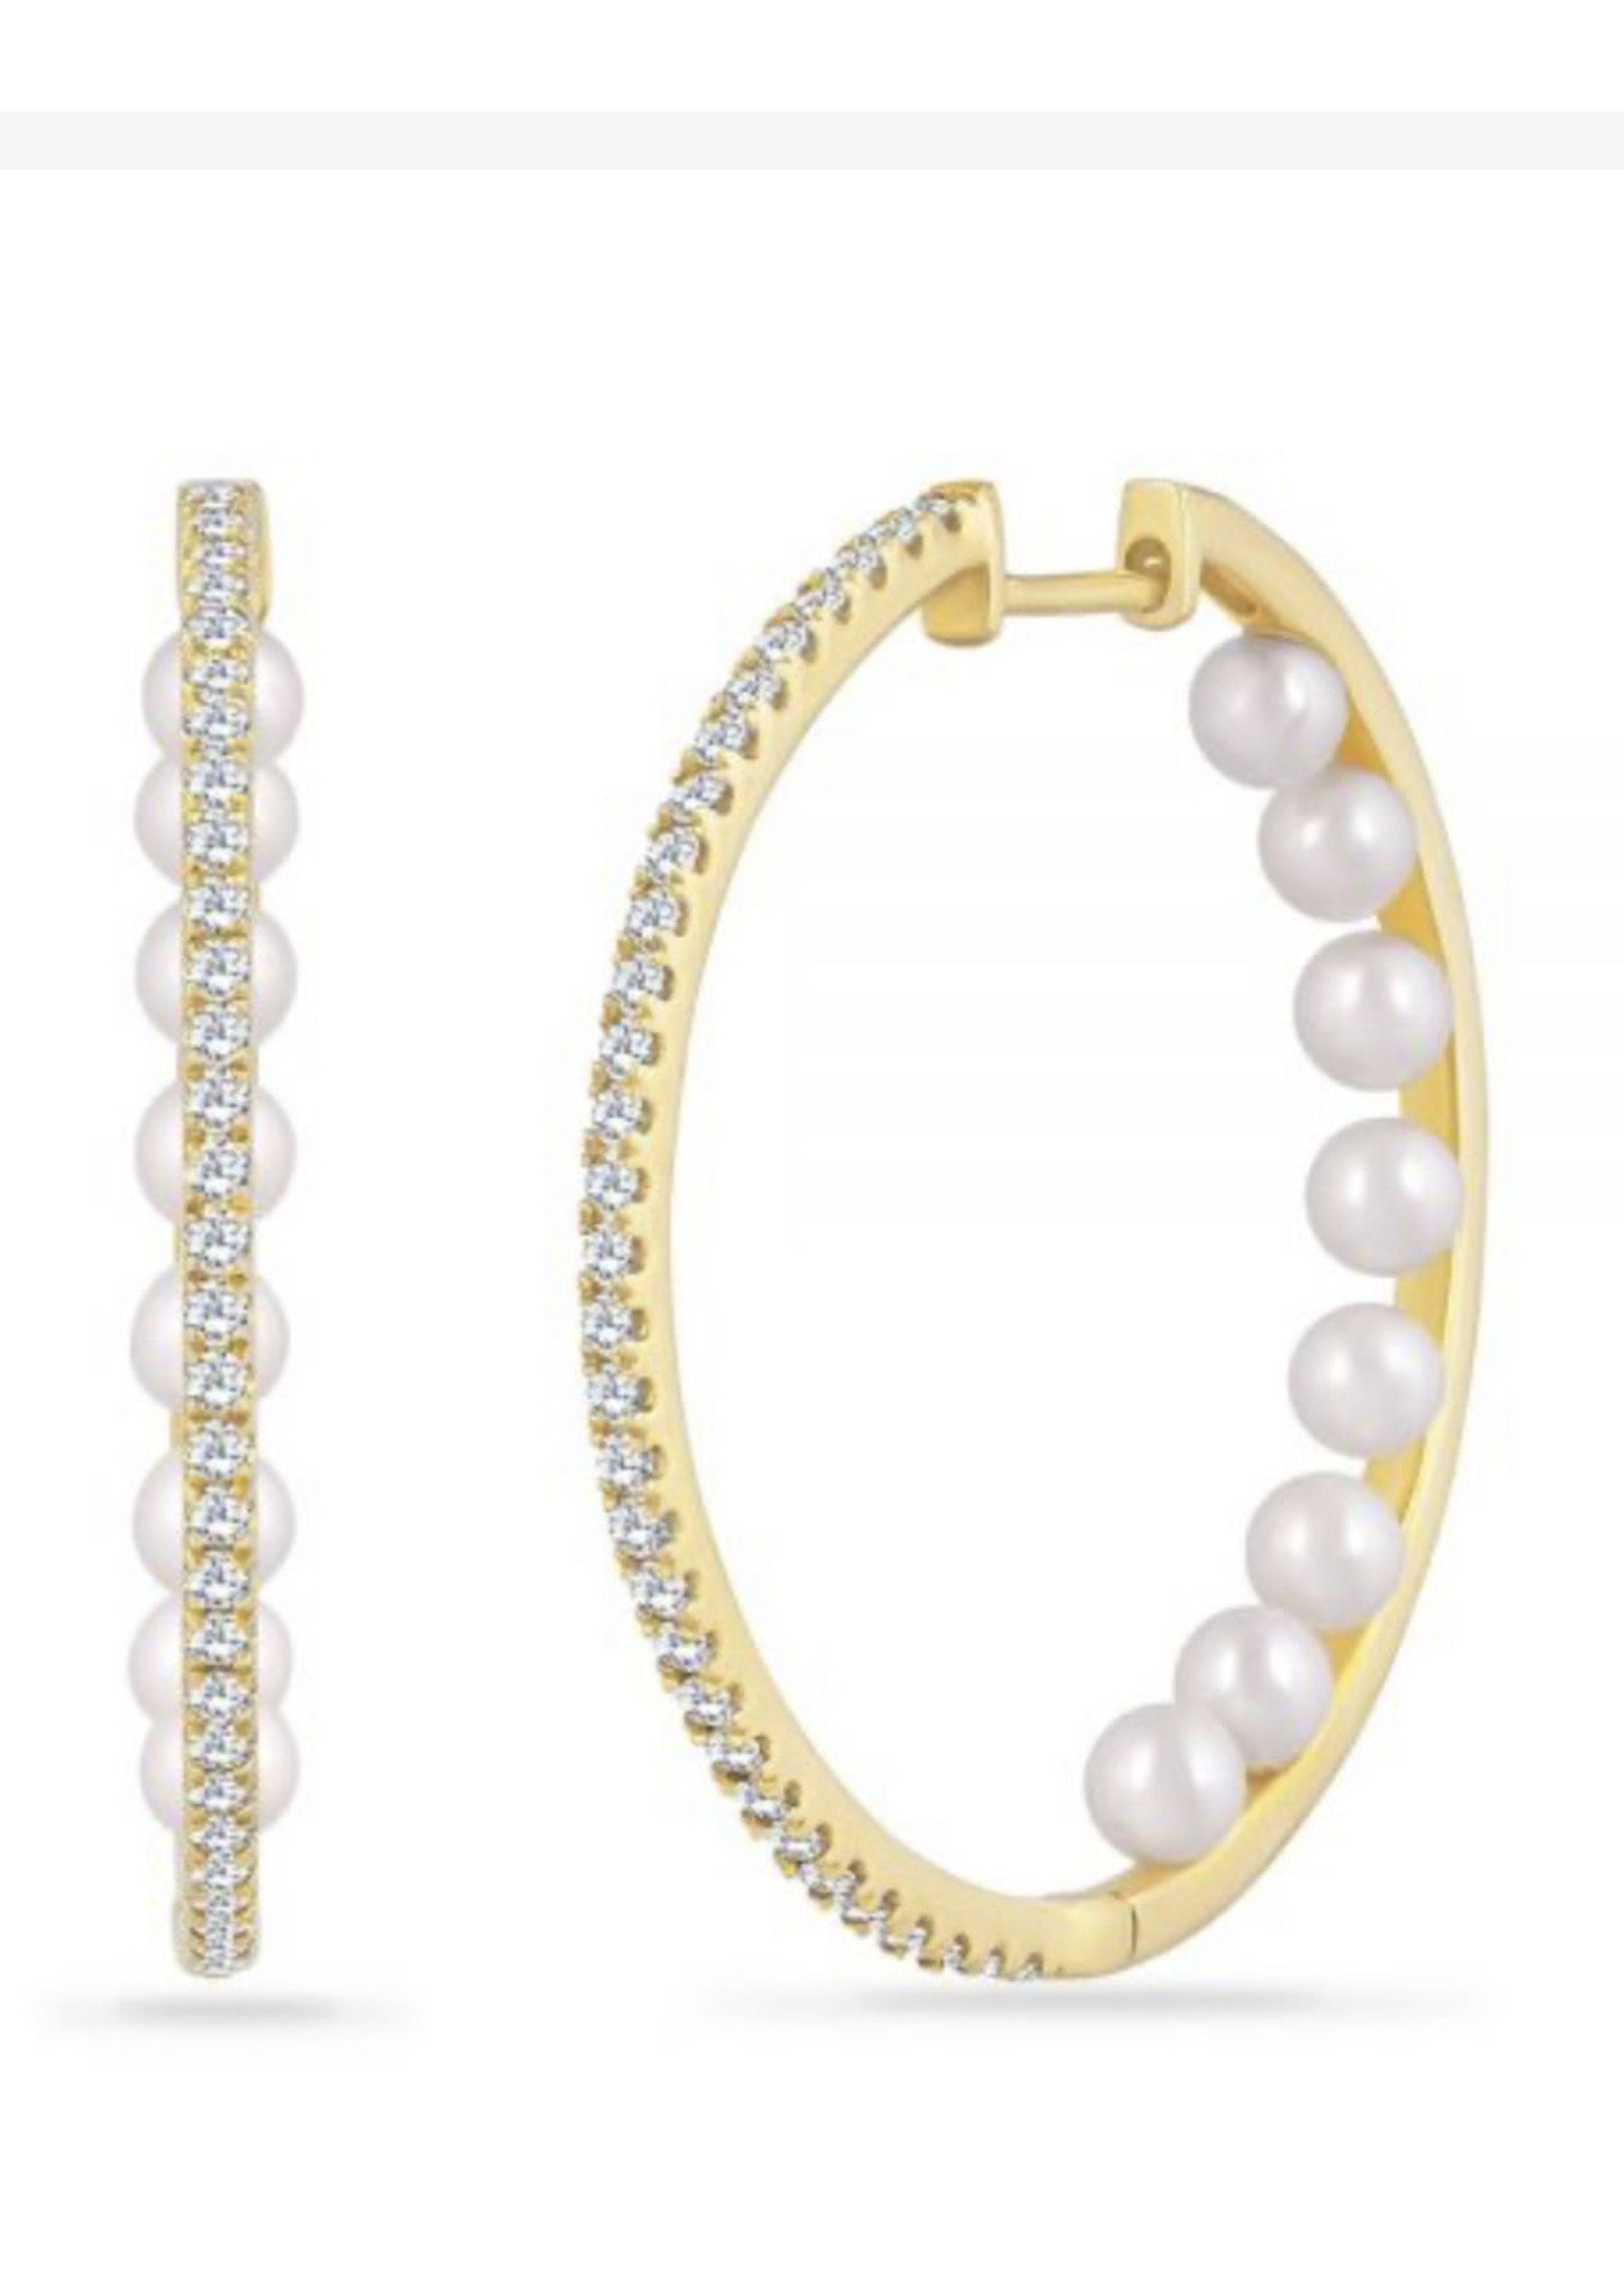 Shula NY 14kY .49ct Diamond Hoops with Pearls